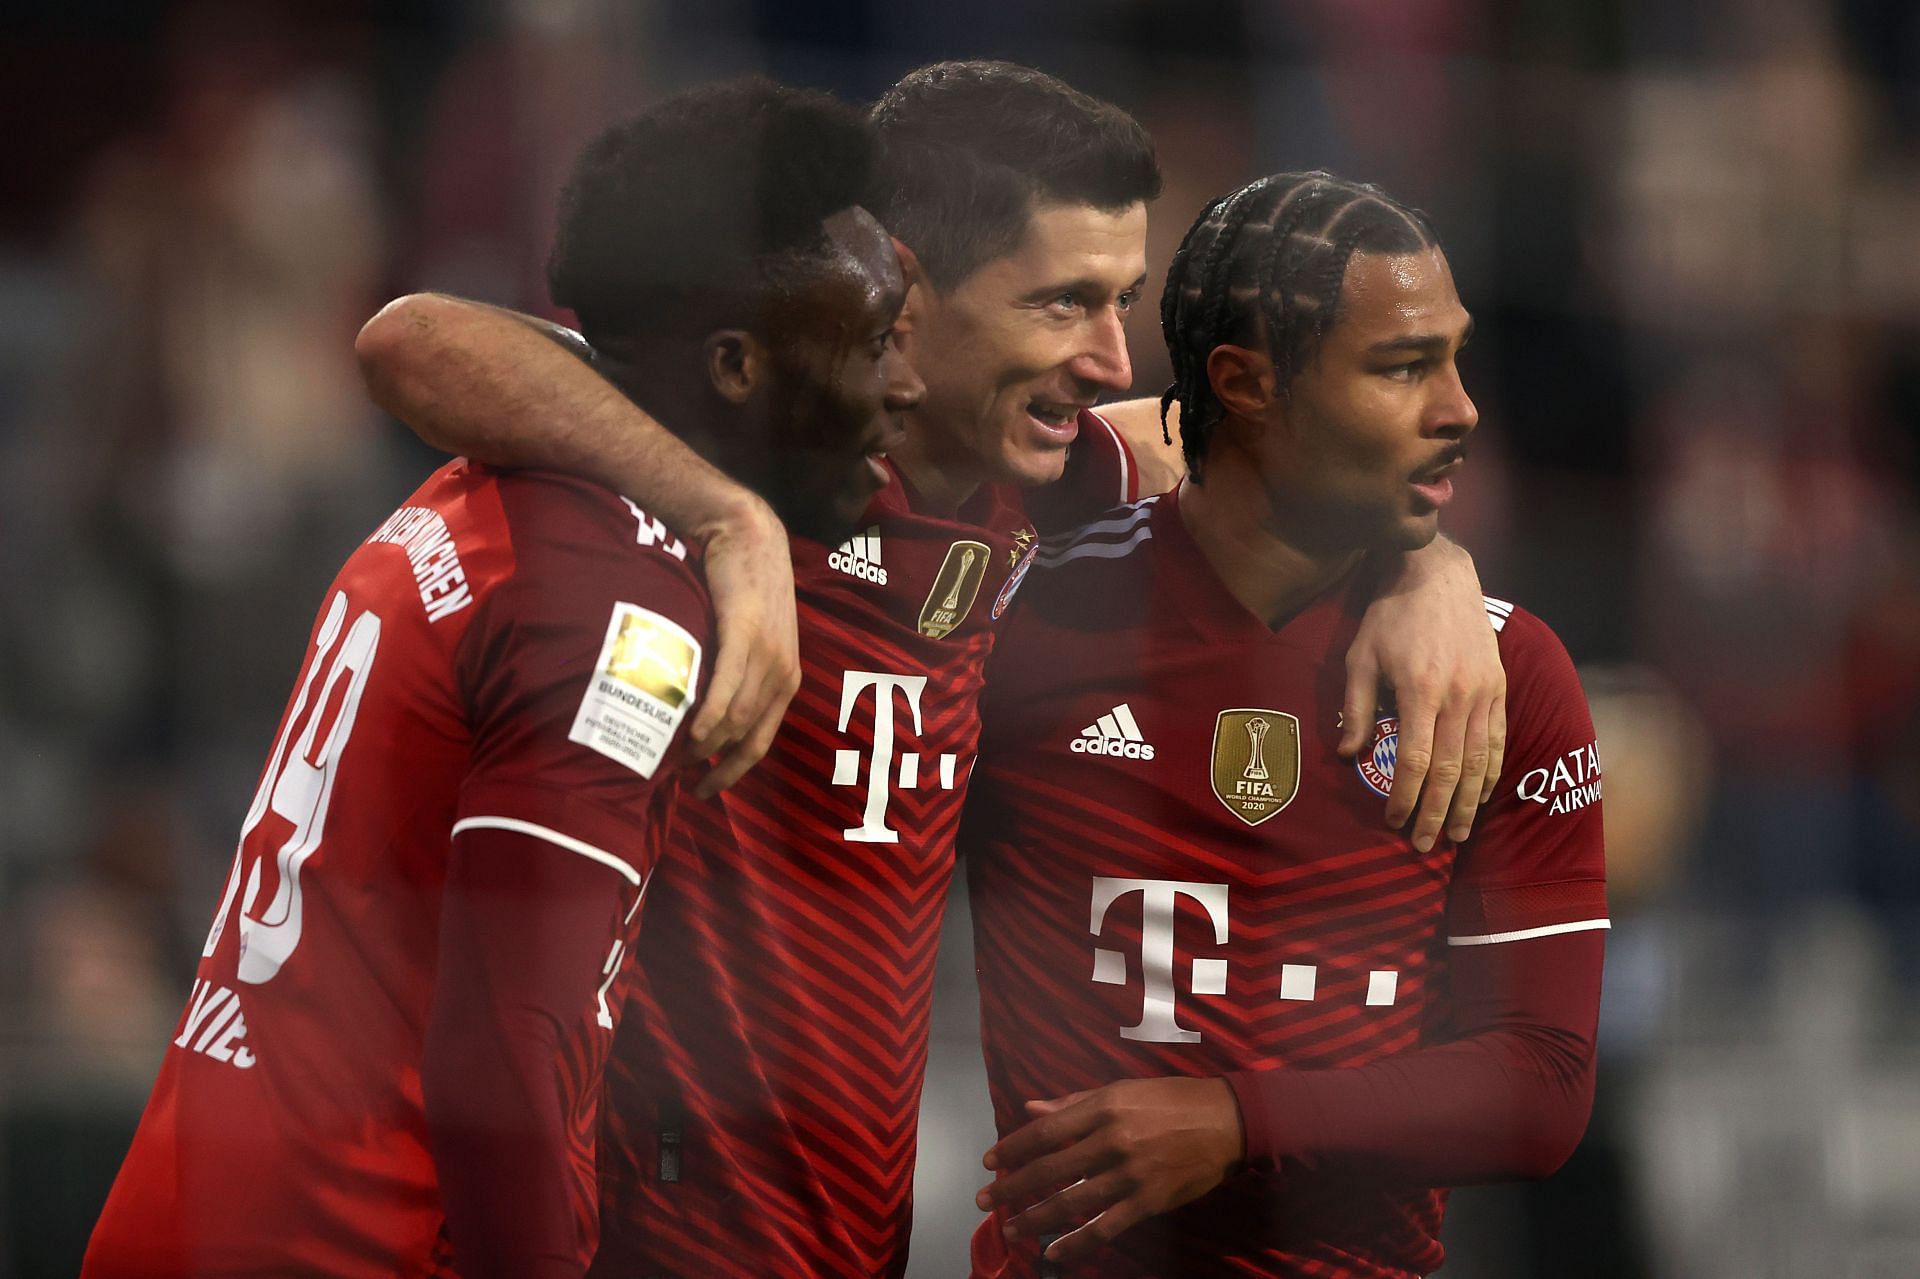 Bayern Munich play Augsburg on Friday